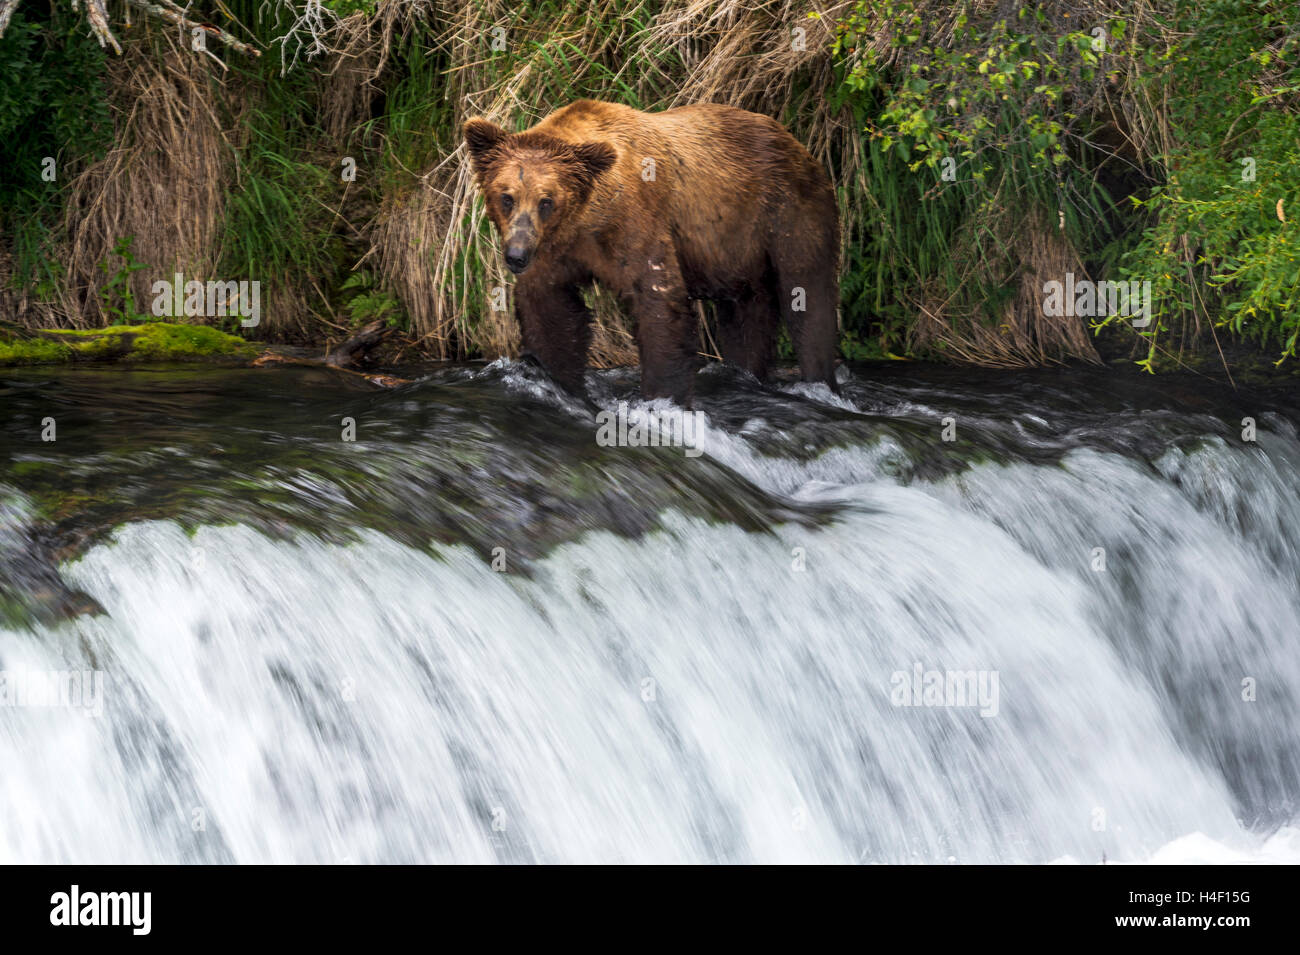 Brauner Bär Jagd auf Lachse in den Fluss, Brooks, Katmai Nationalpark, Alaska Stockfoto